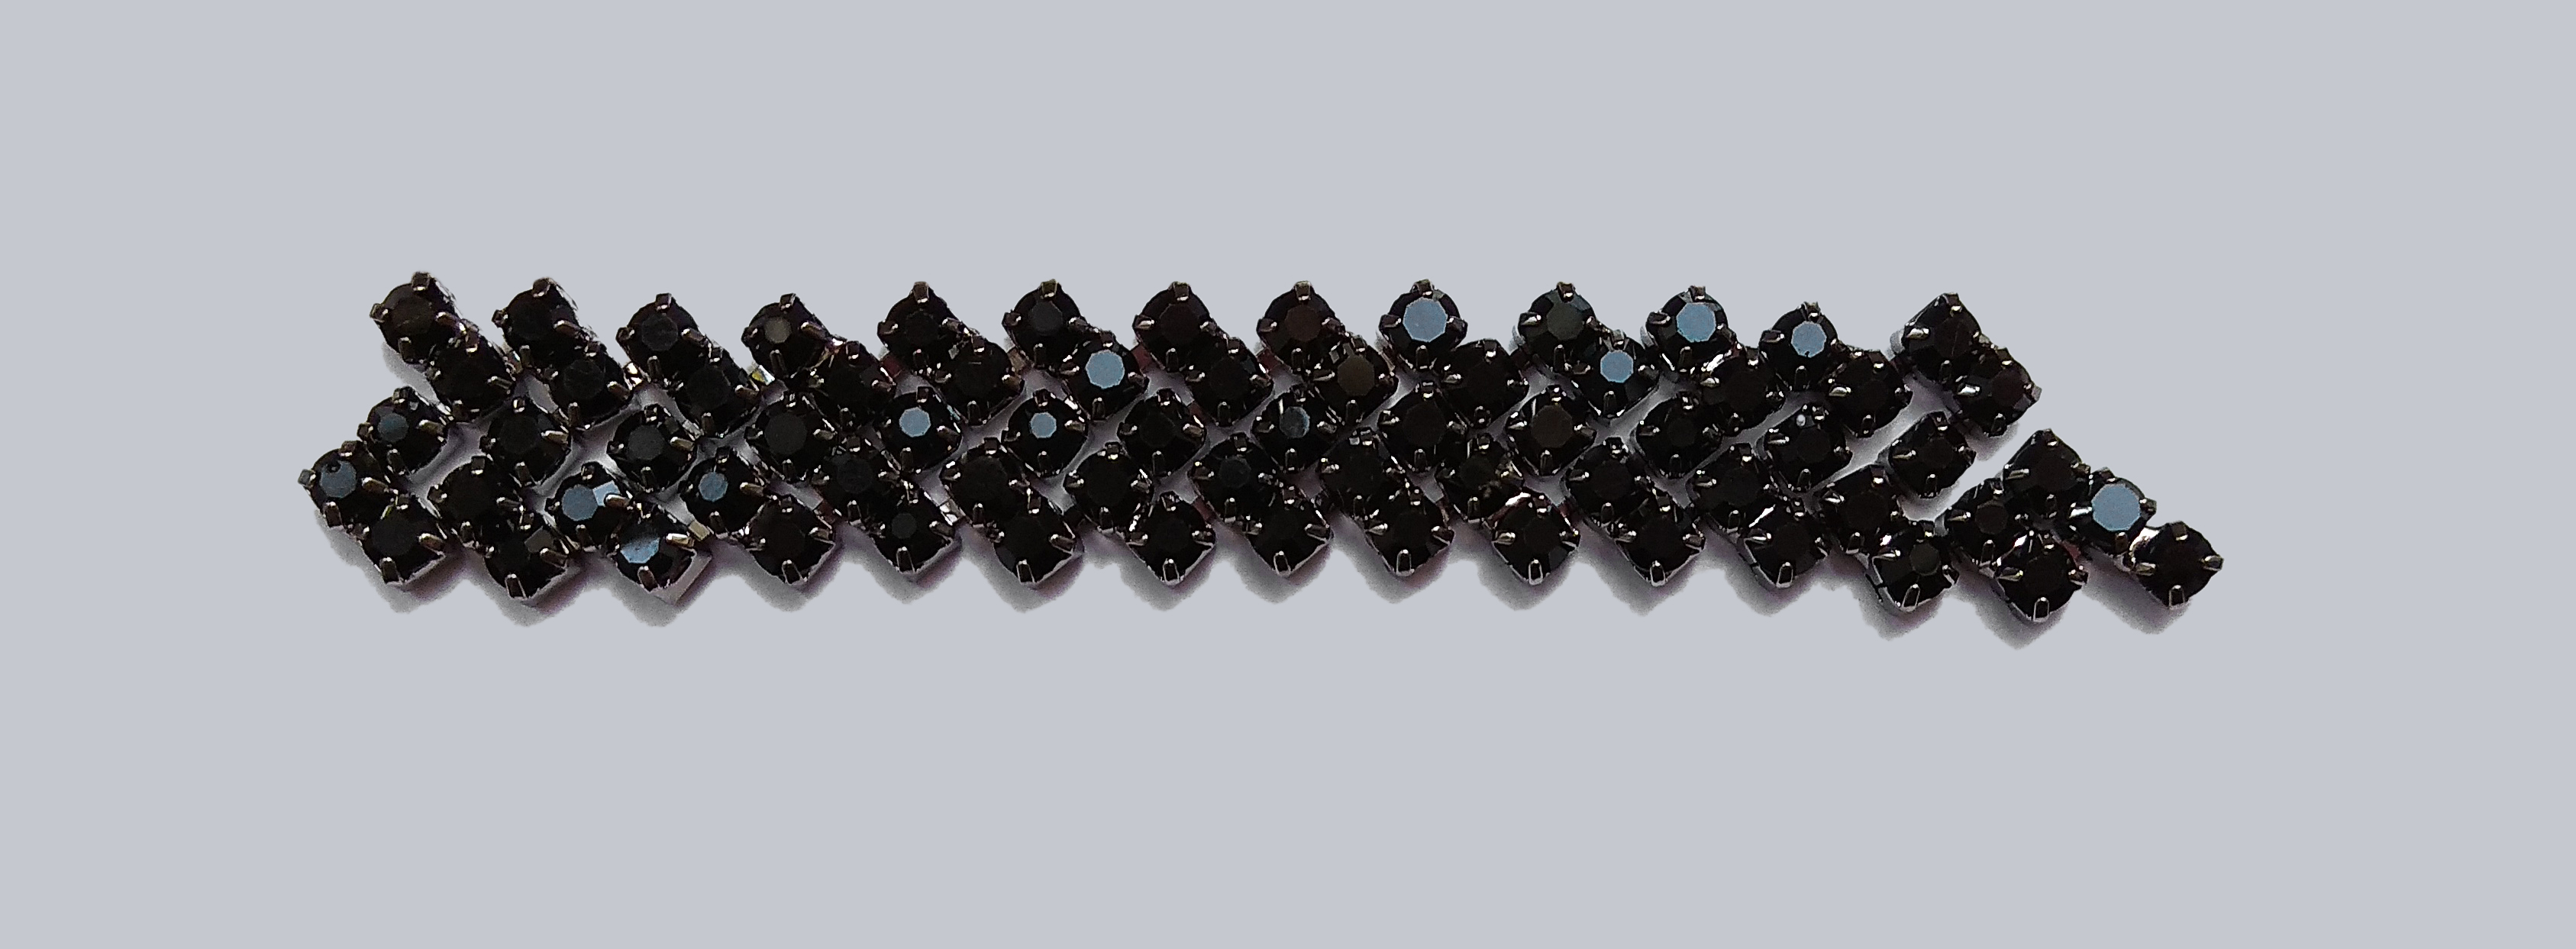 Декор металлический Цепочка со стразами 5 рядов, 1,6см, серебр., jet black, ярд. Декор Металл Пришивной